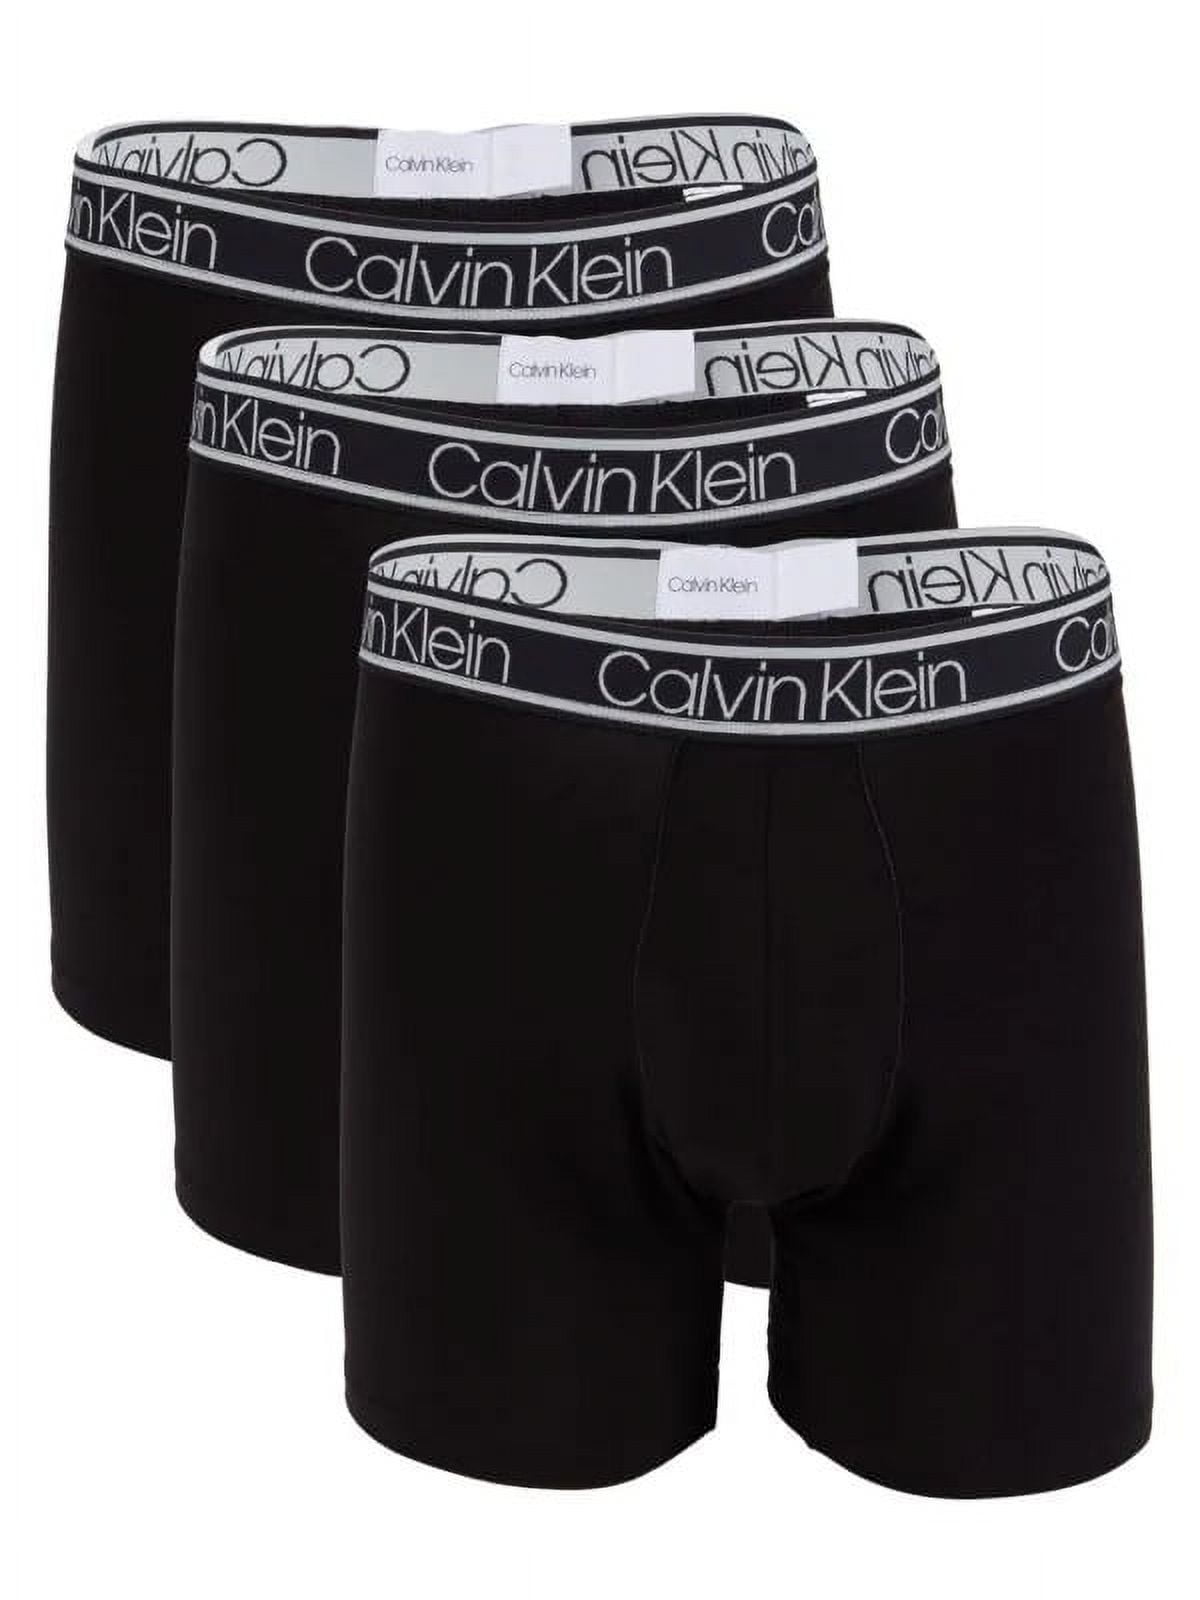 Calvin Klein BLACK Men's 3-Pack Boxer Briefs, US Large 